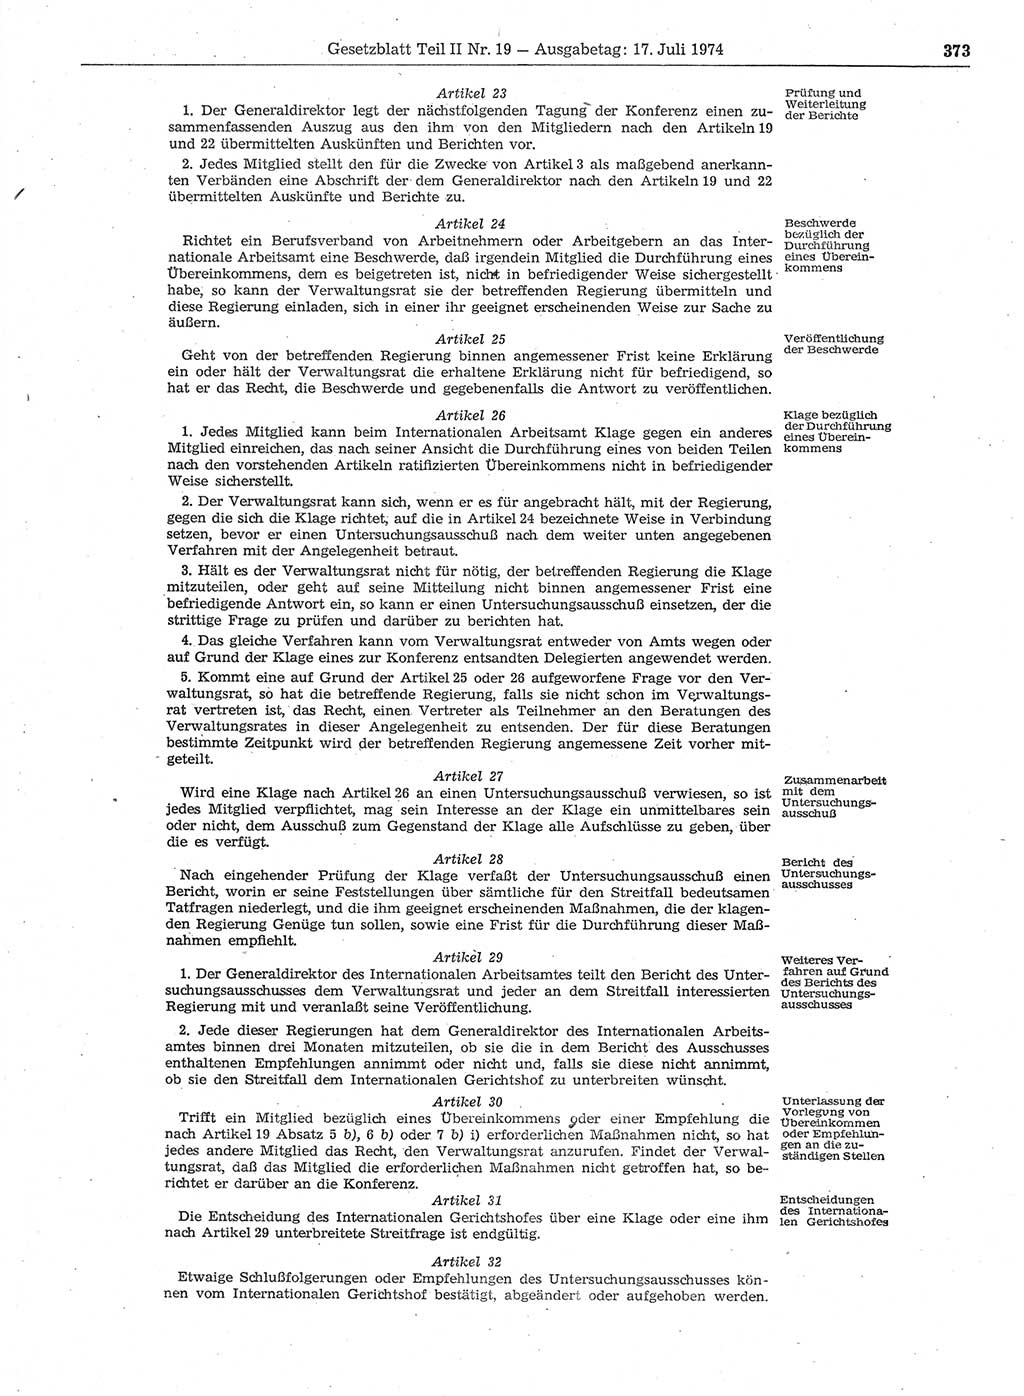 Gesetzblatt (GBl.) der Deutschen Demokratischen Republik (DDR) Teil ⅠⅠ 1974, Seite 373 (GBl. DDR ⅠⅠ 1974, S. 373)